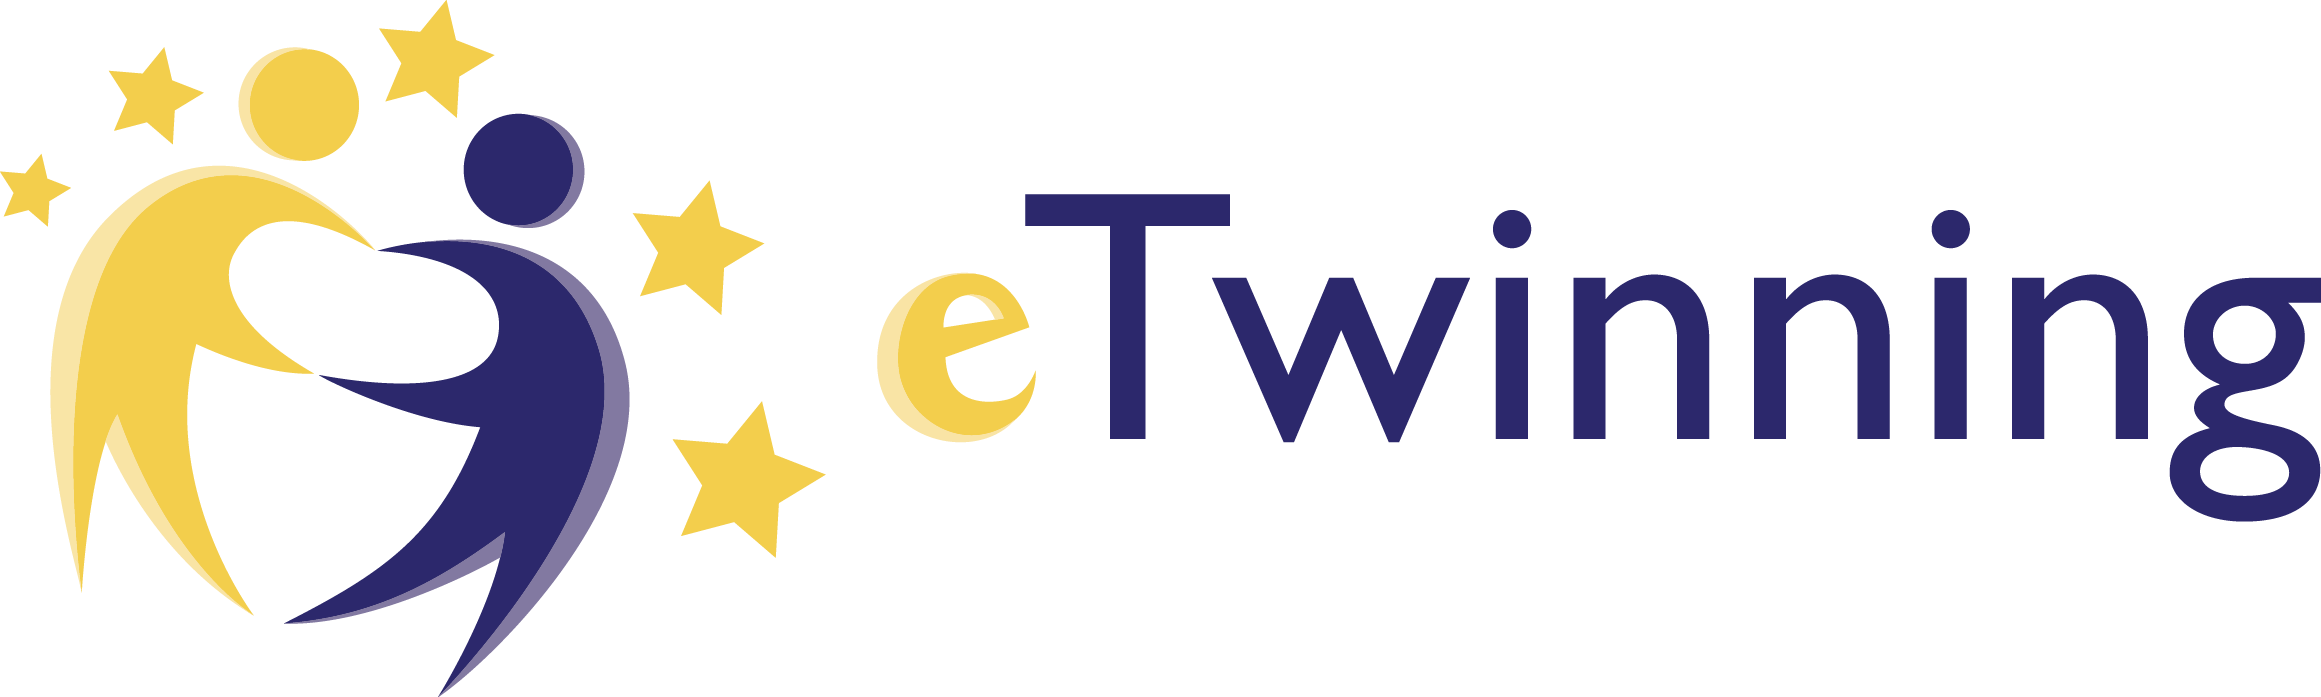 etwinning_logo